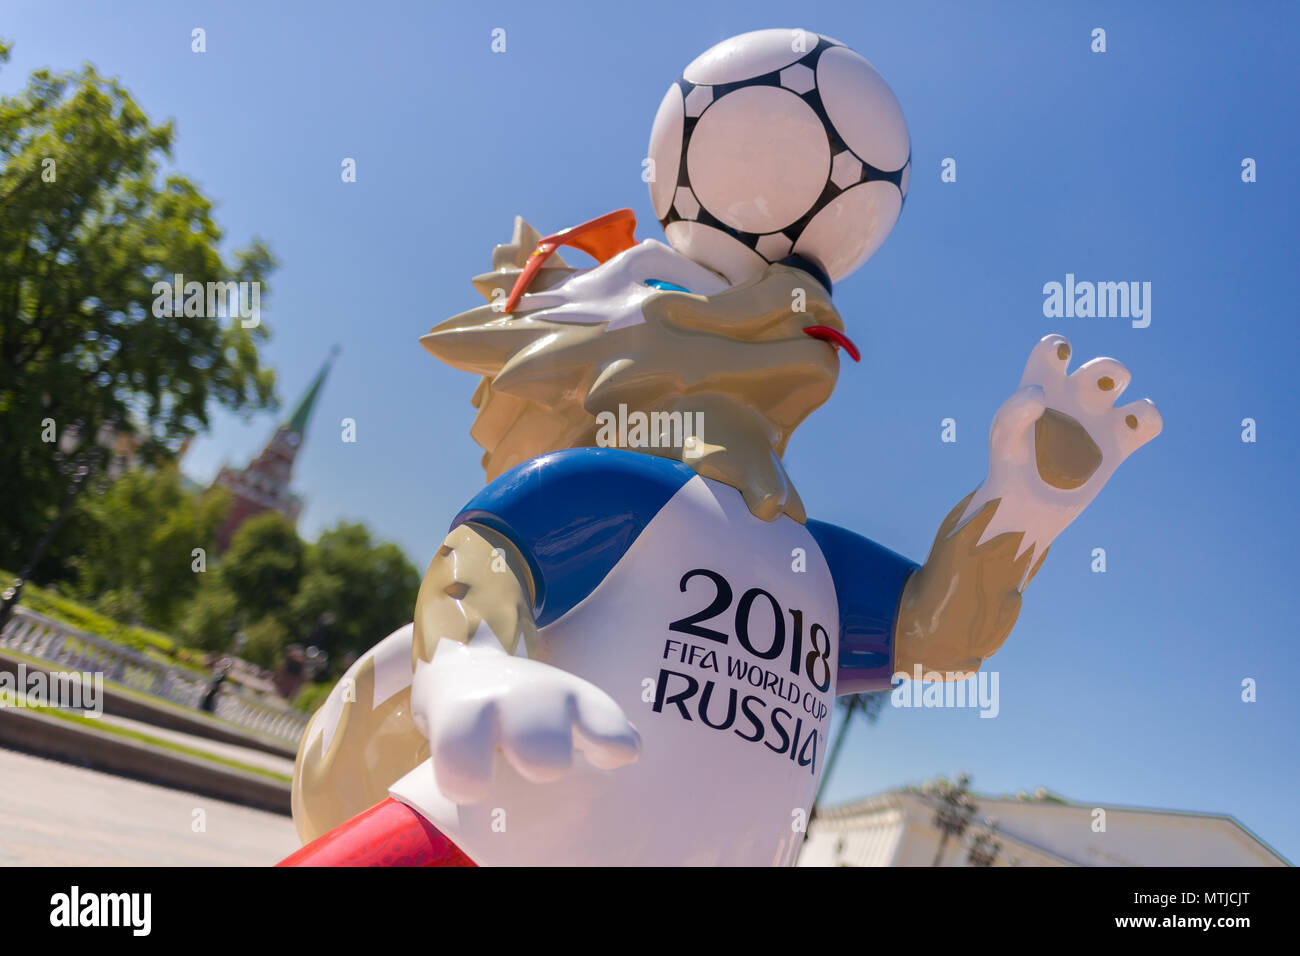 Mascotte officielle de la Coupe du Monde de la FIFA 2018 en Russie - Zabivaka et Kremlin de Moscou tour à fond. Symbole de foot Banque D'Images